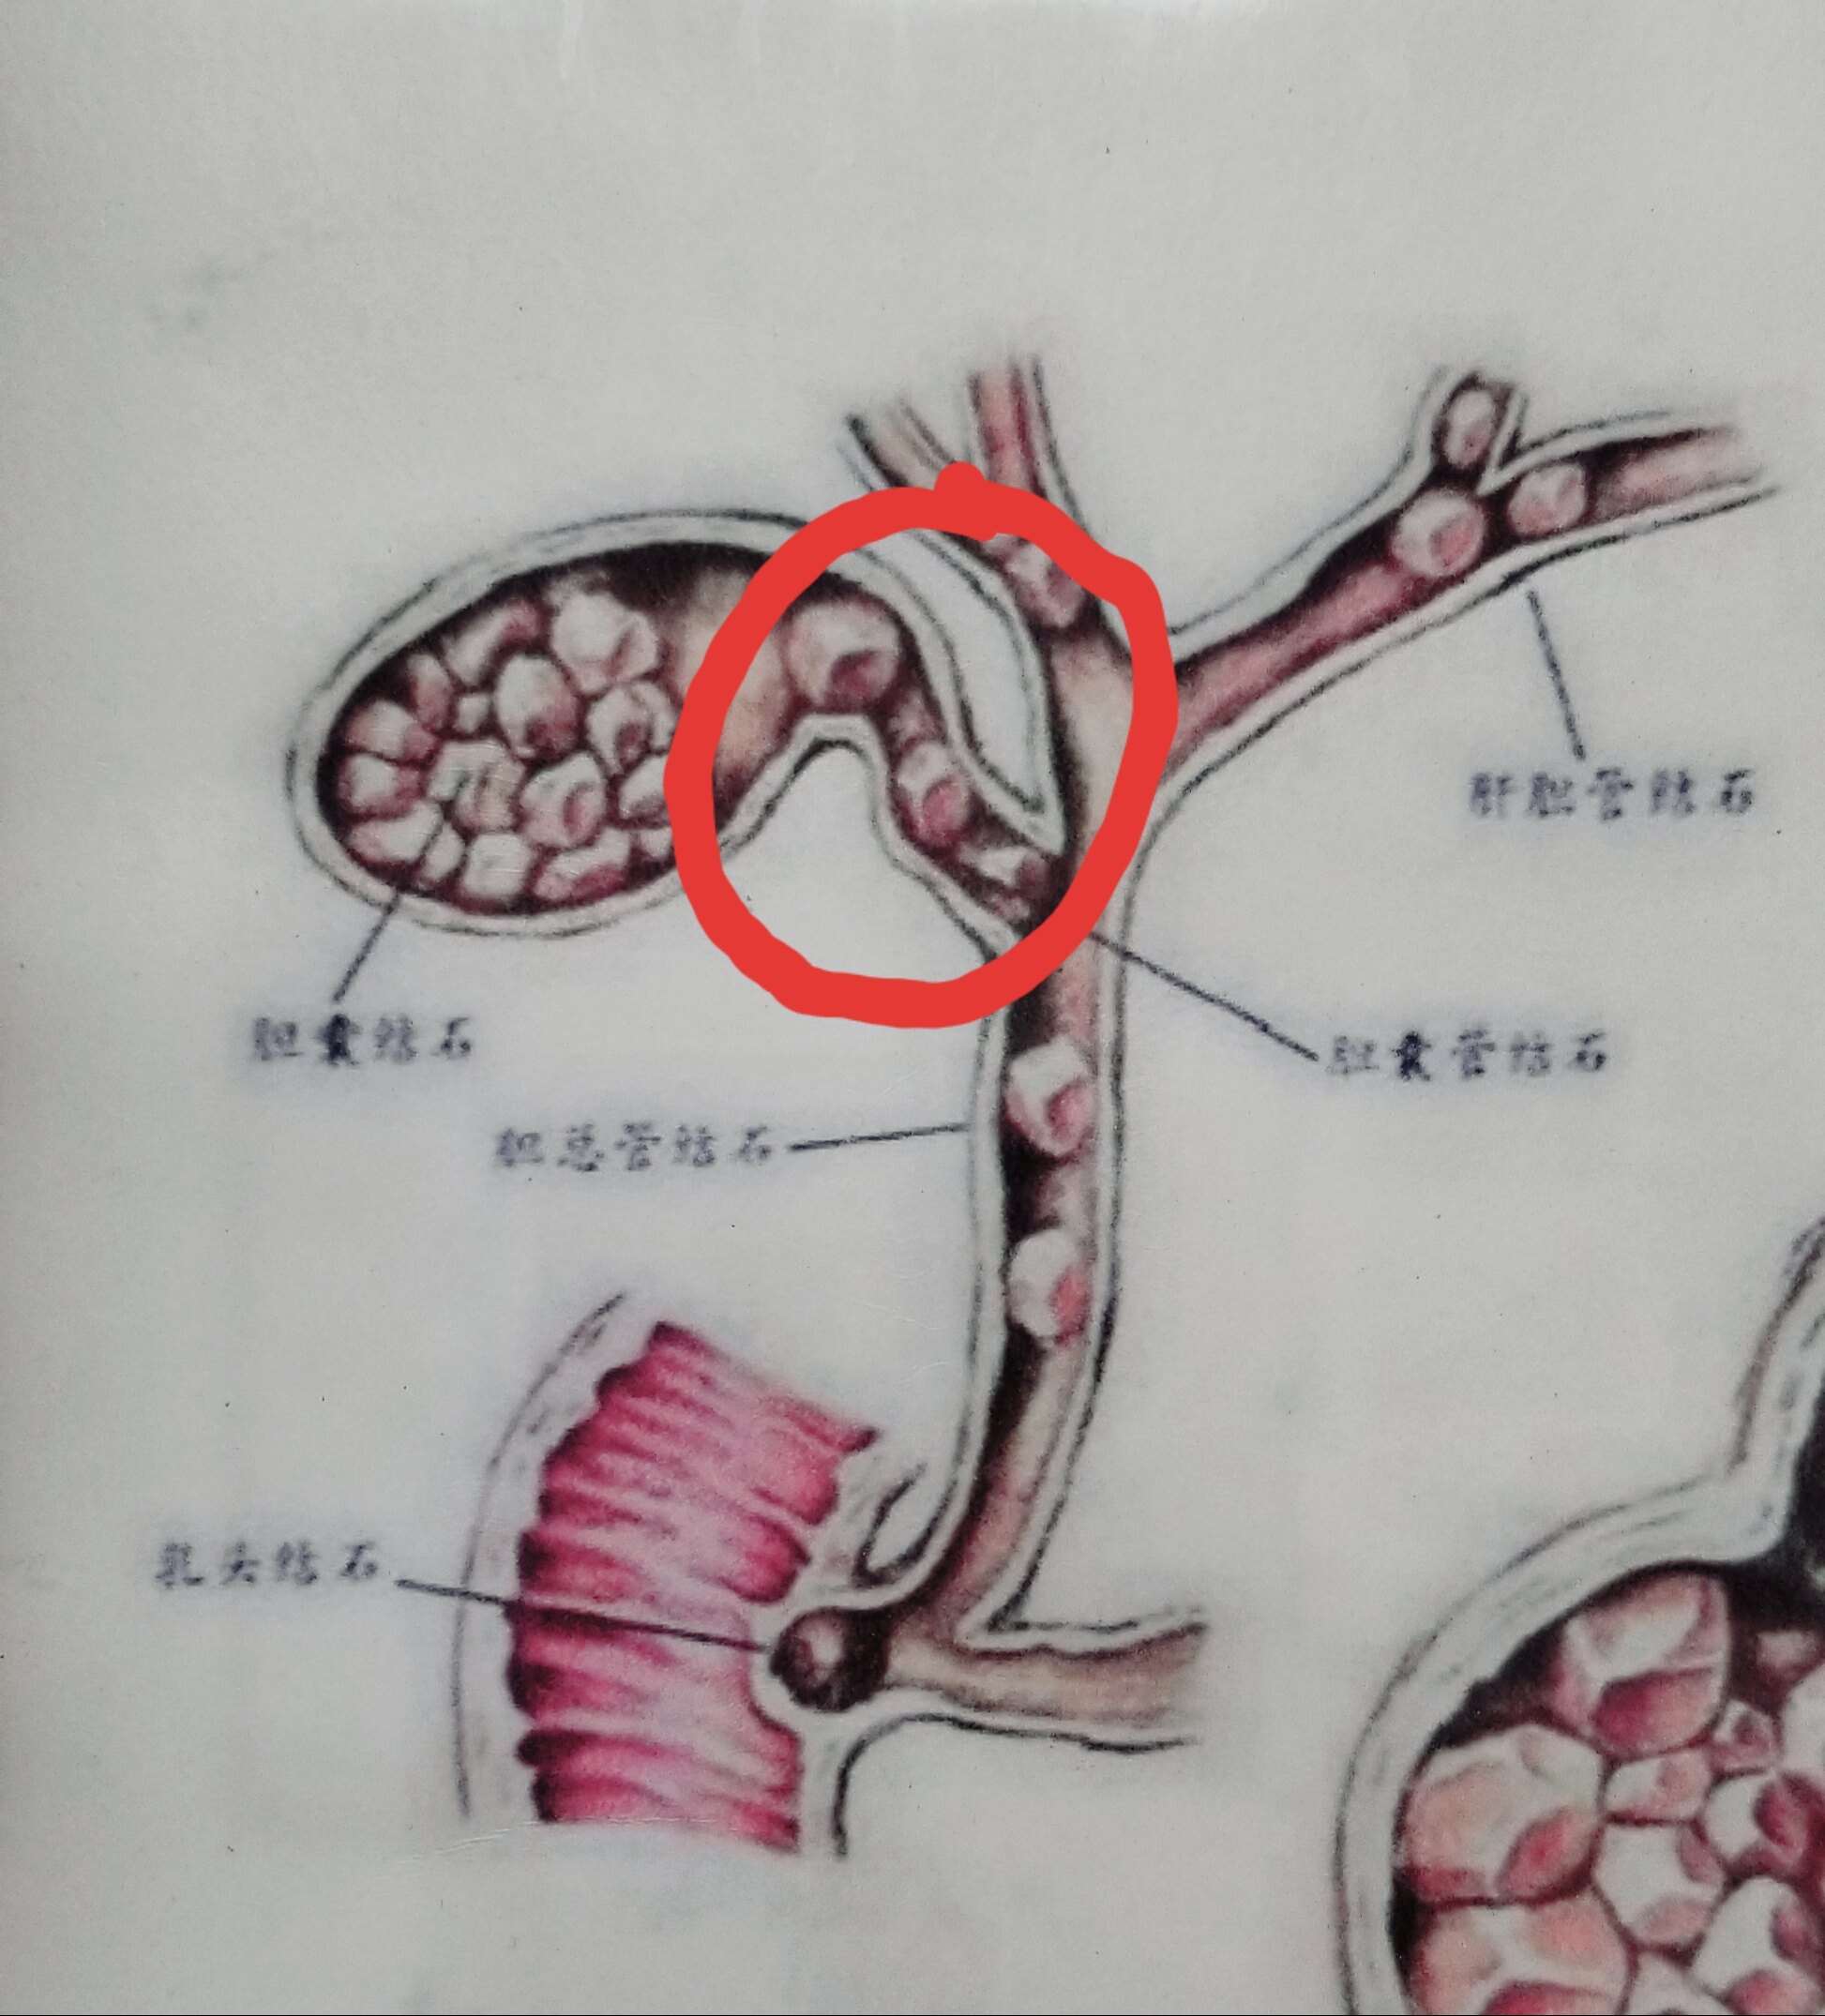 造成这种情况,最常见的原因是胆囊颈部或胆囊管结石嵌顿(画红圈处)